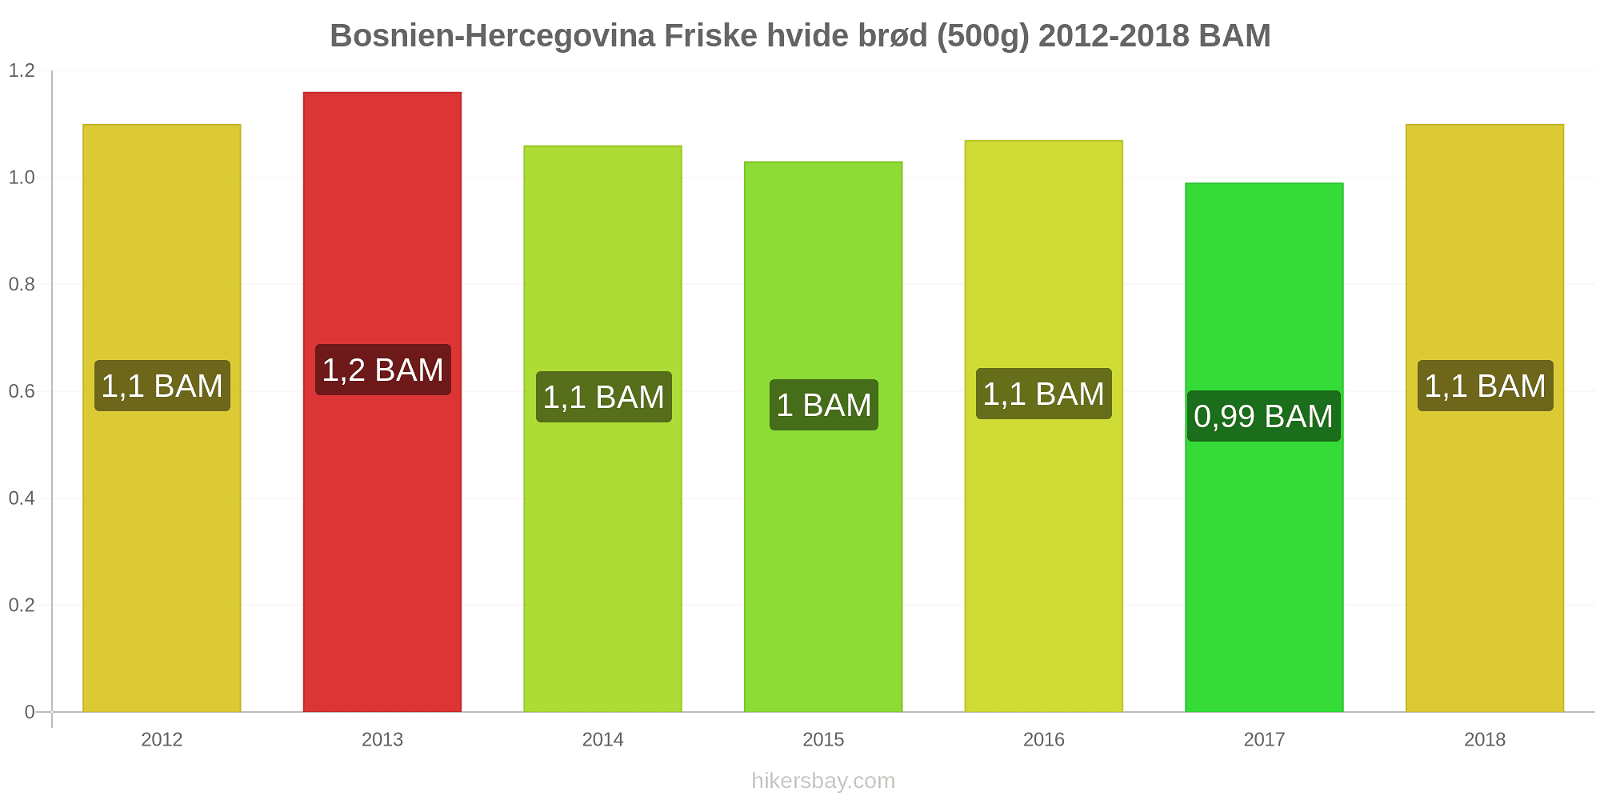 Bosnien-Hercegovina prisændringer Friske hvide brød (500g) hikersbay.com